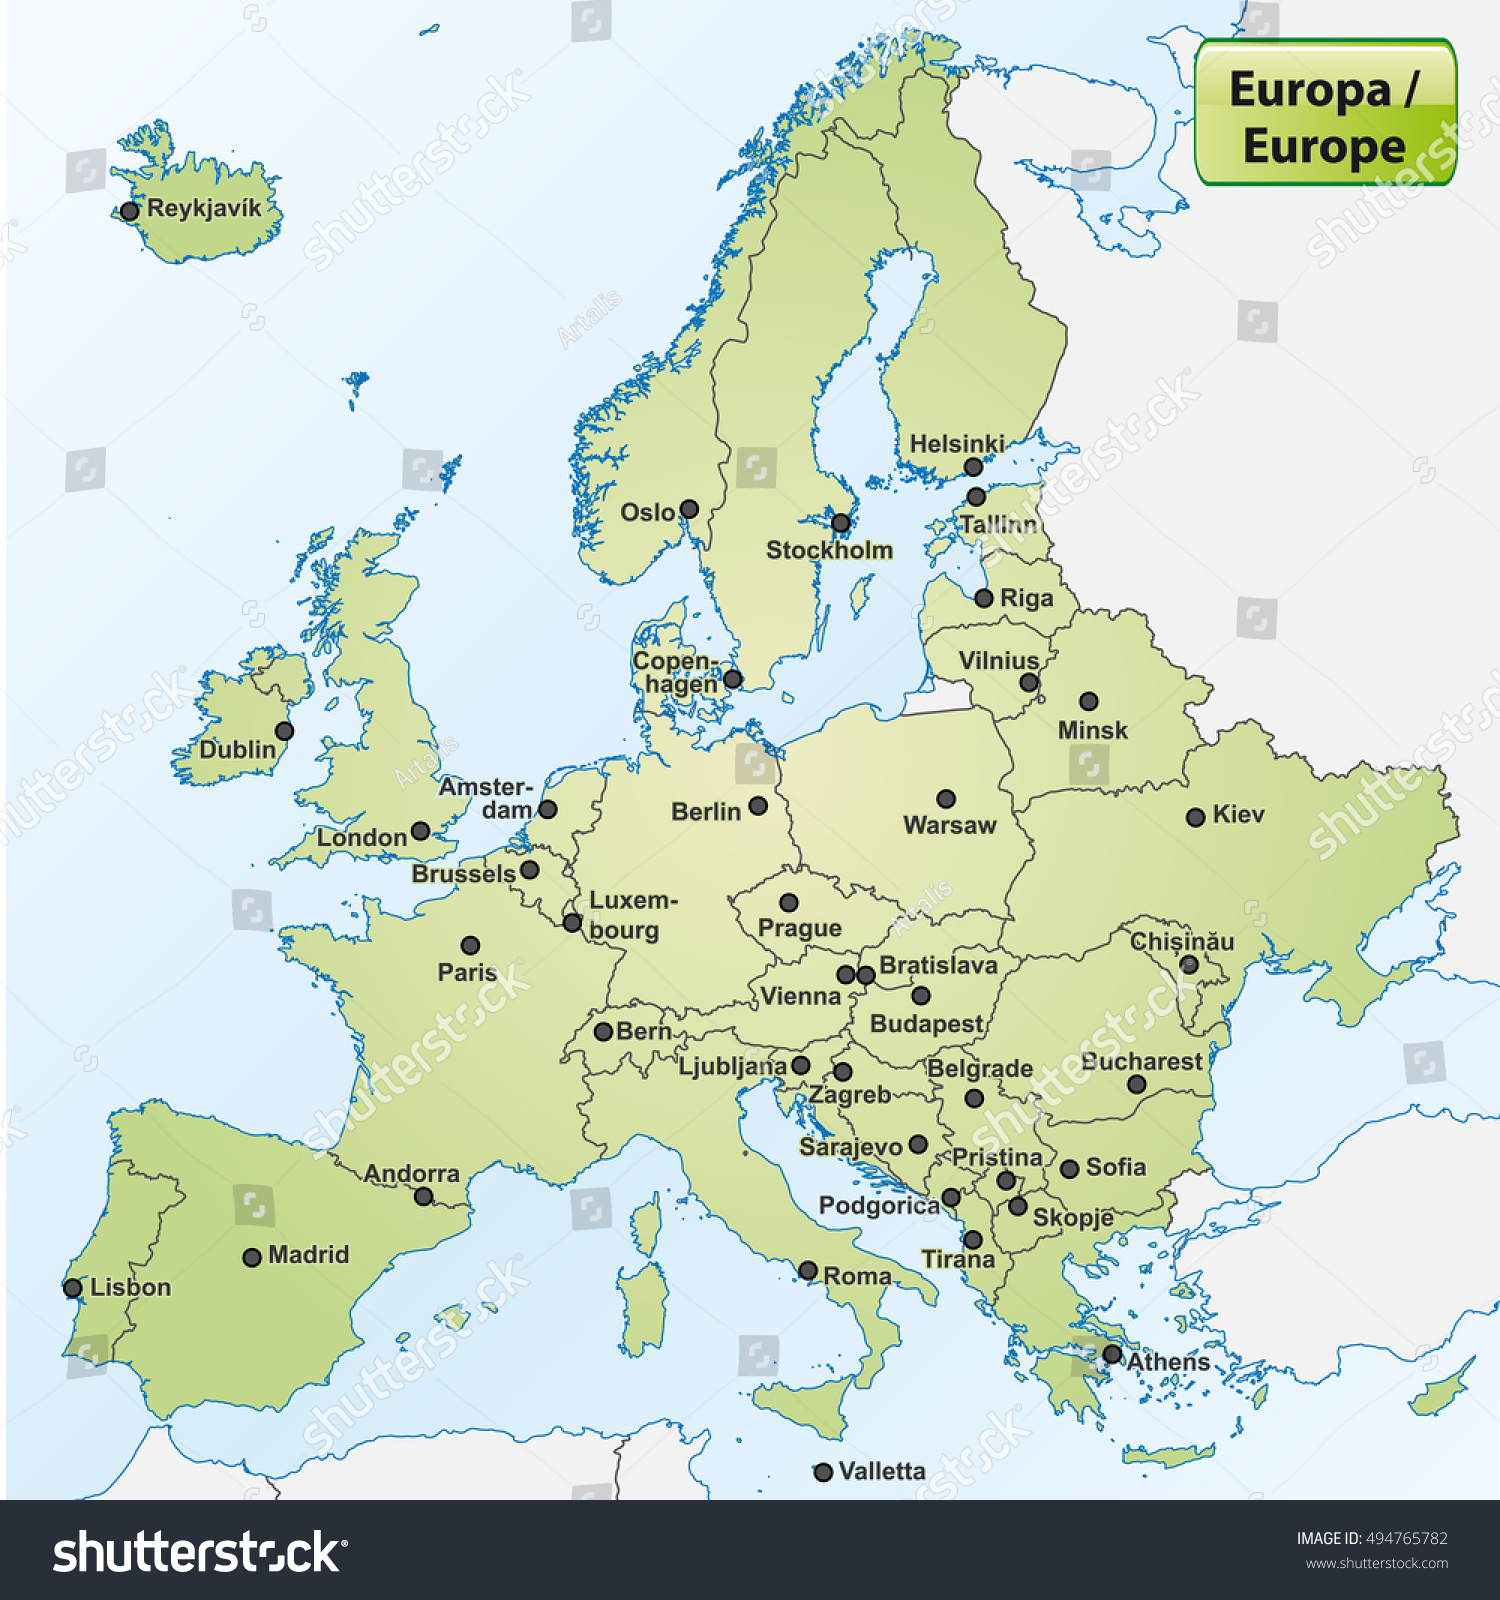 Image Vectorielle De Stock De Carte De L&amp;#039;europe Avec Les destiné Carte Capitale Europe 